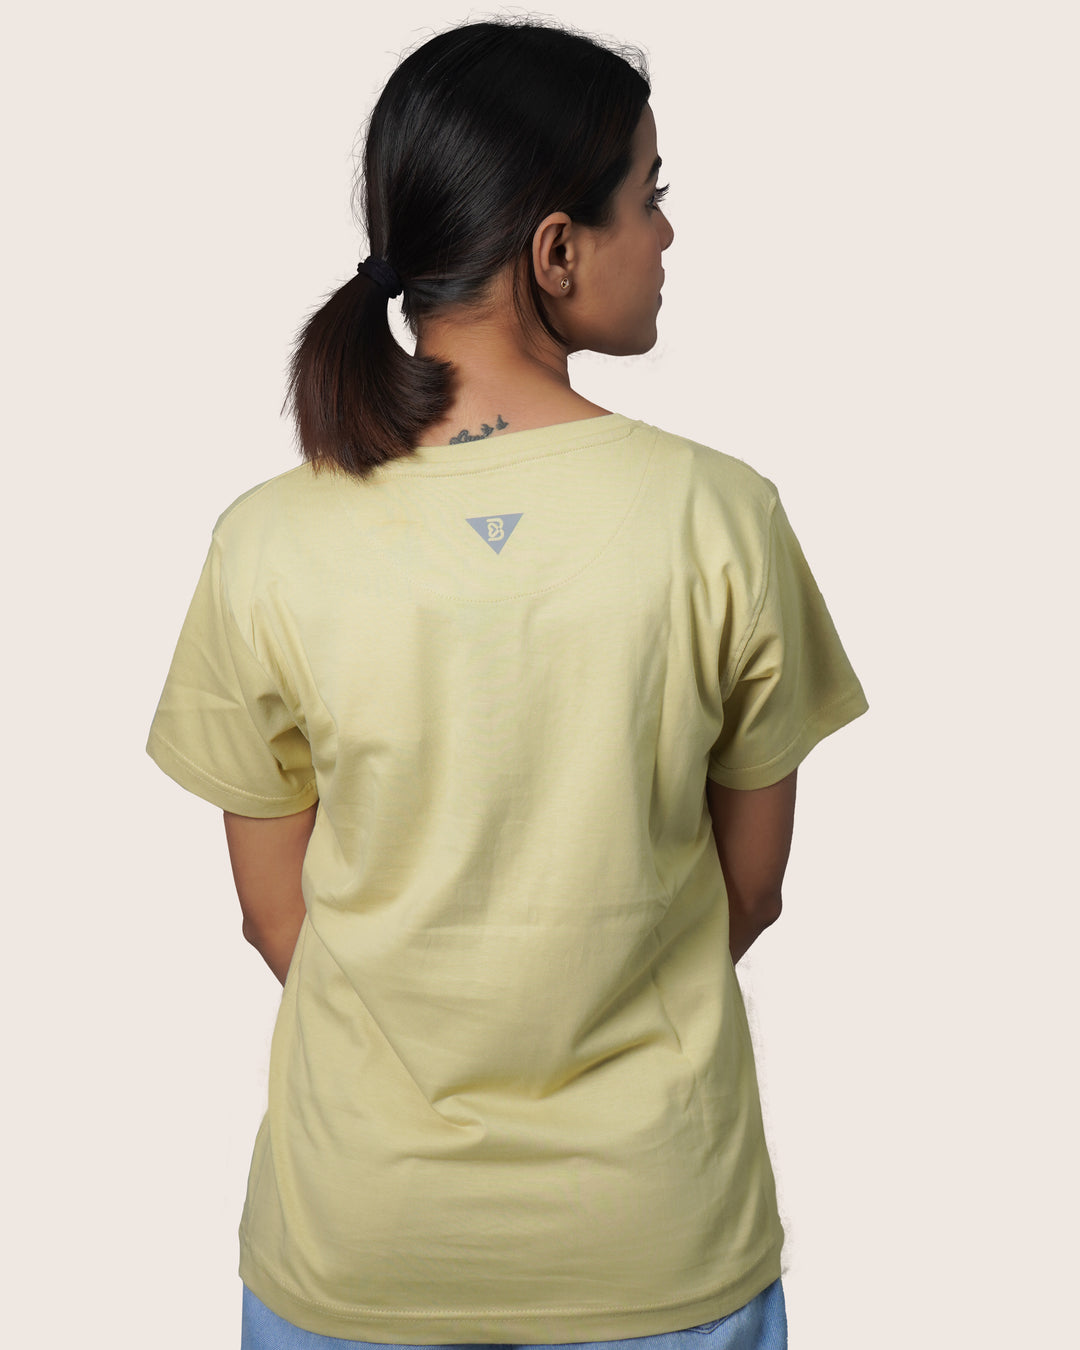 Feathersoft Home Comfort Women's Crewneck T-Shirt: Caramel Dust